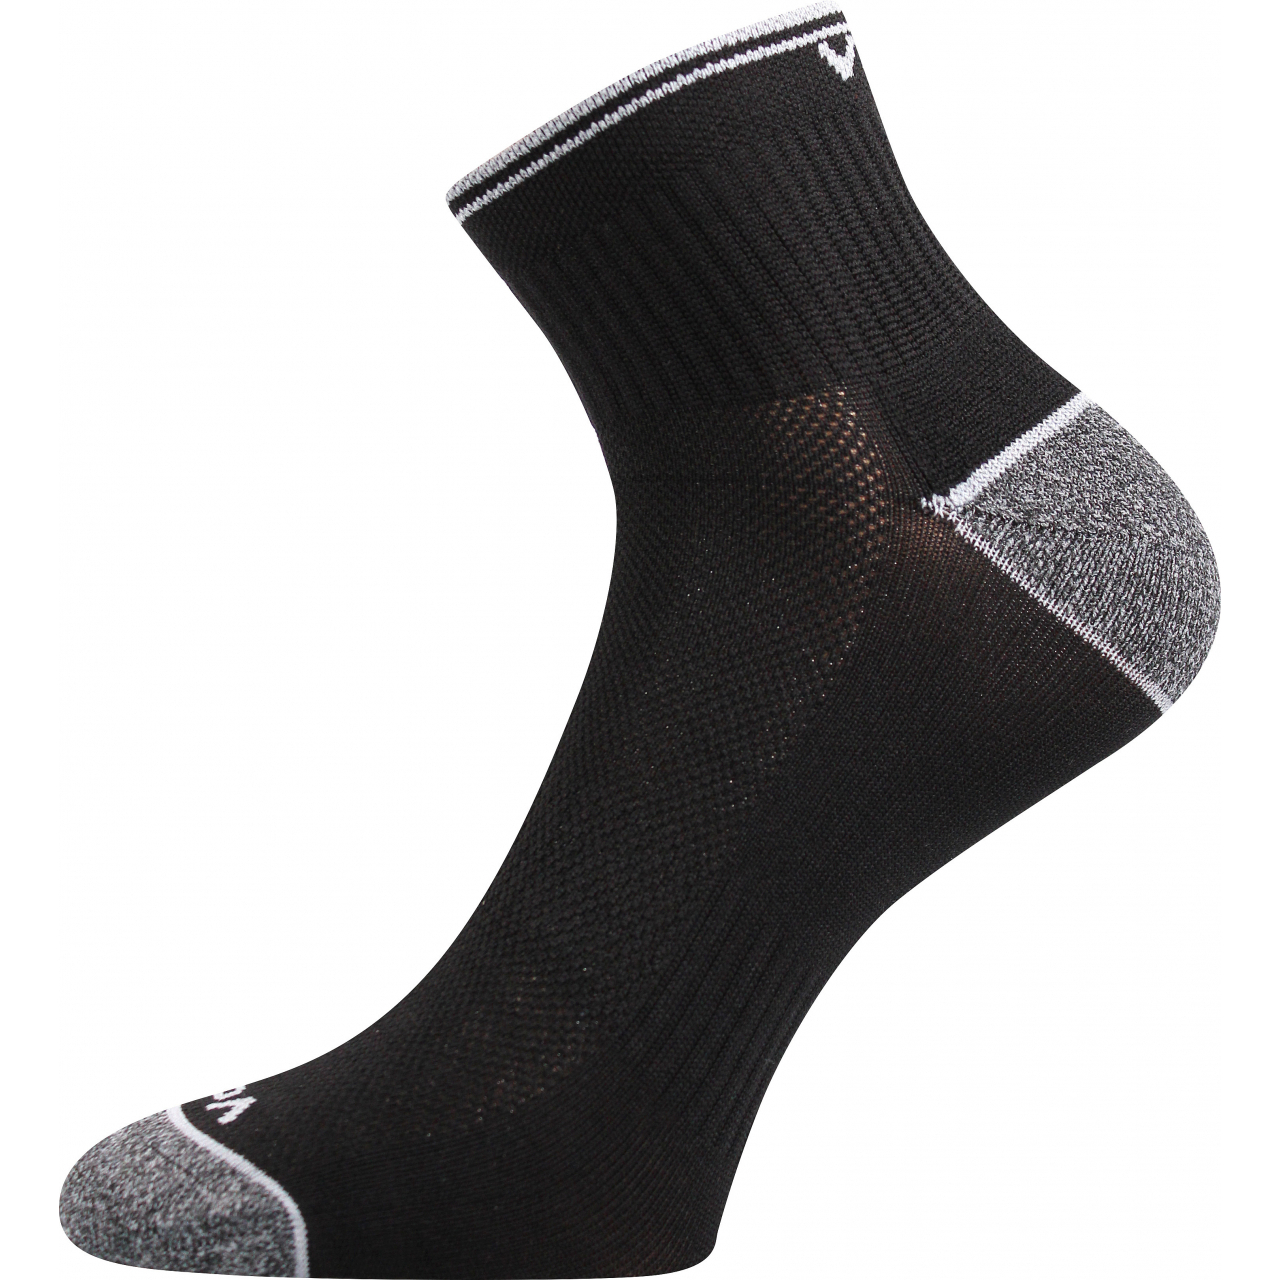 Ponožky unisex sportovní Voxx Ray - černé, 43-46